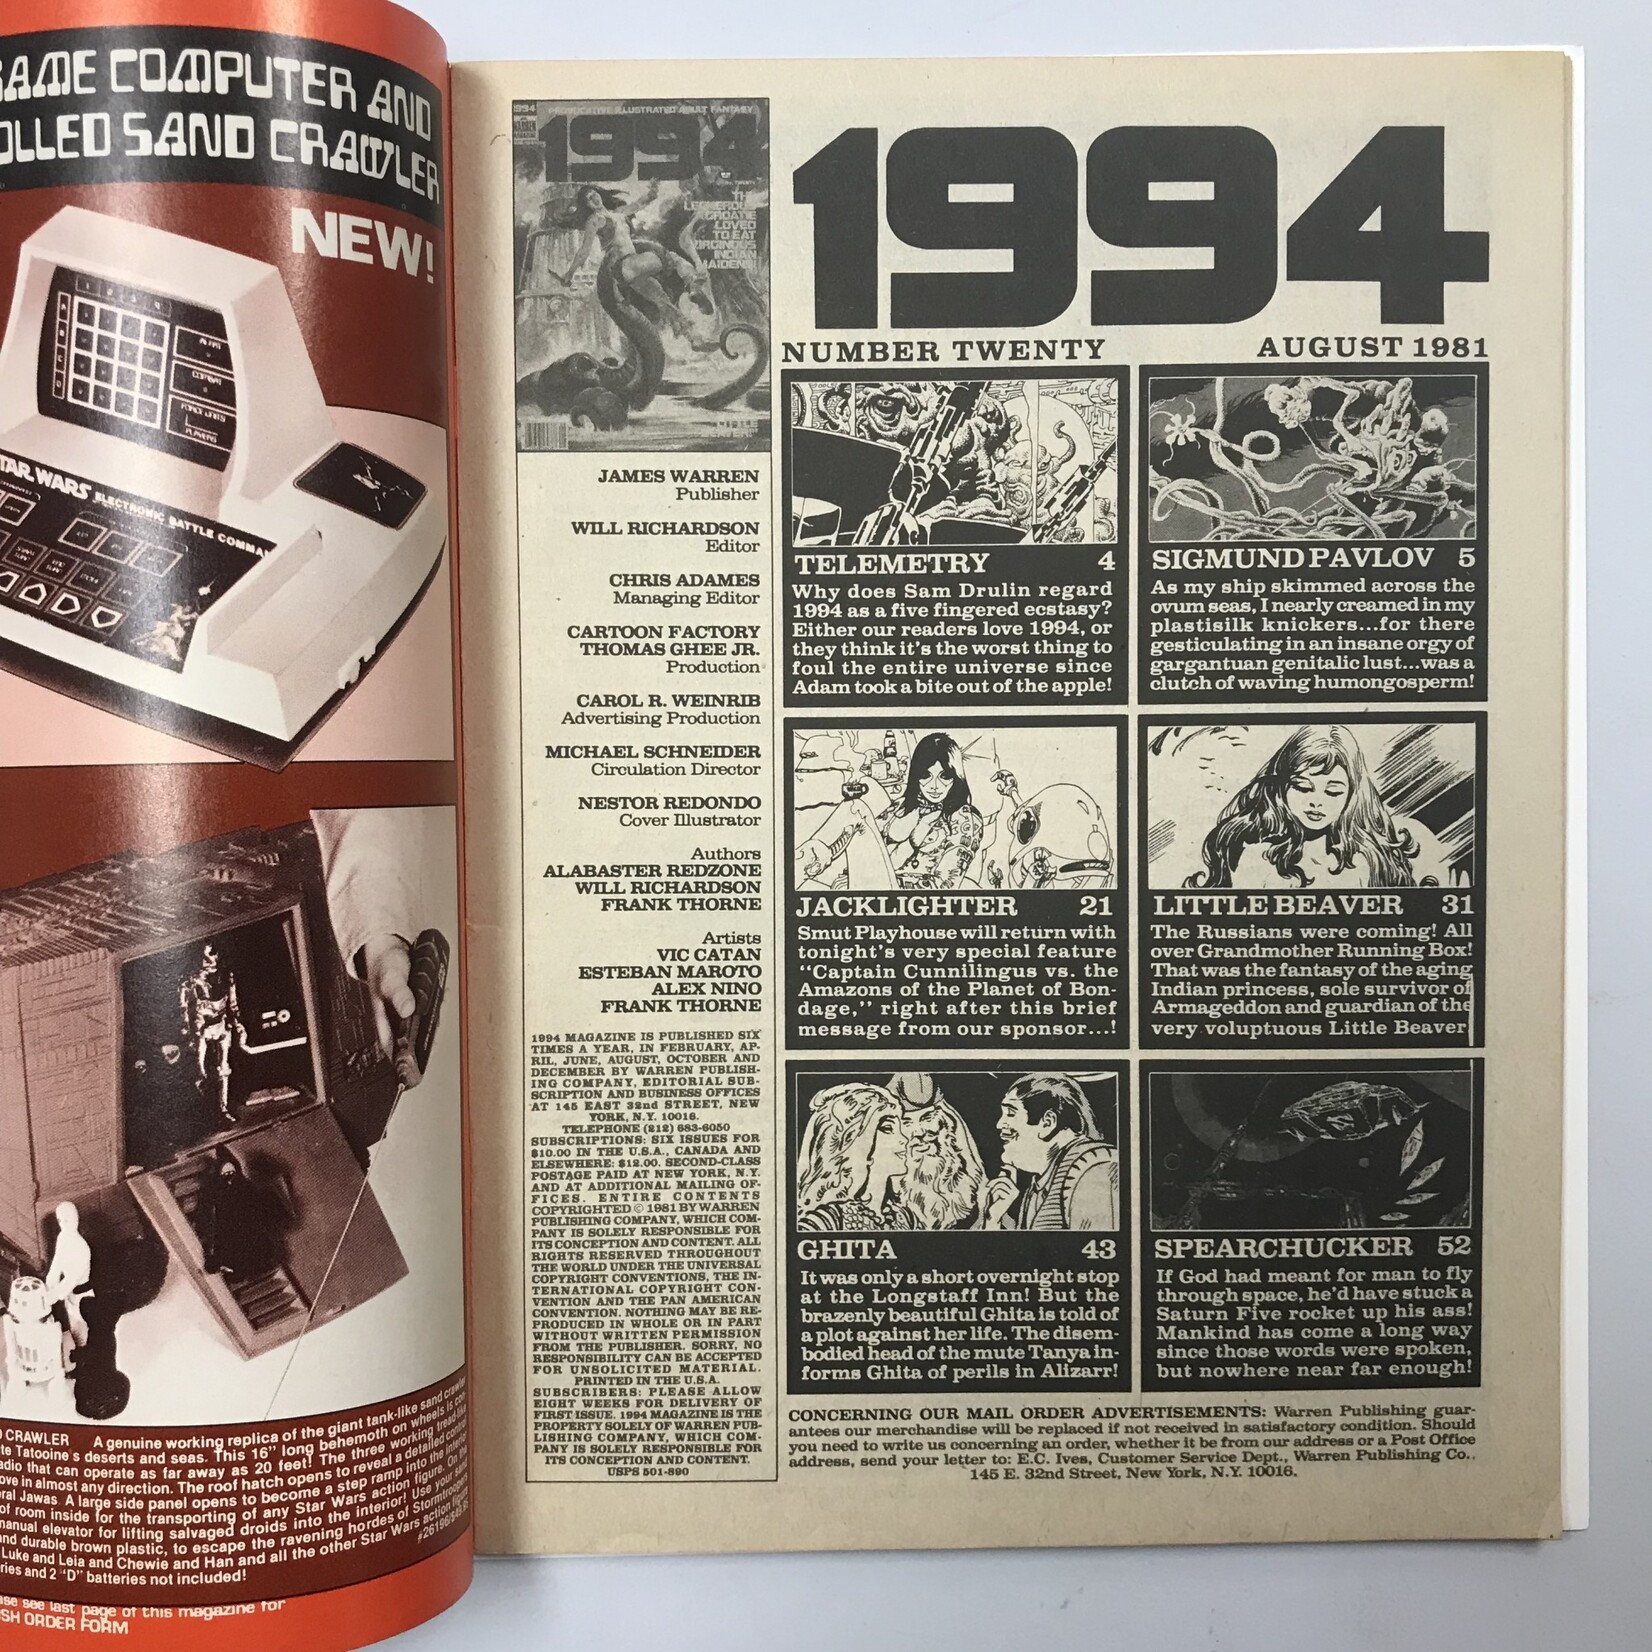 1994 - #20 August 1981 - Magazine (18+)